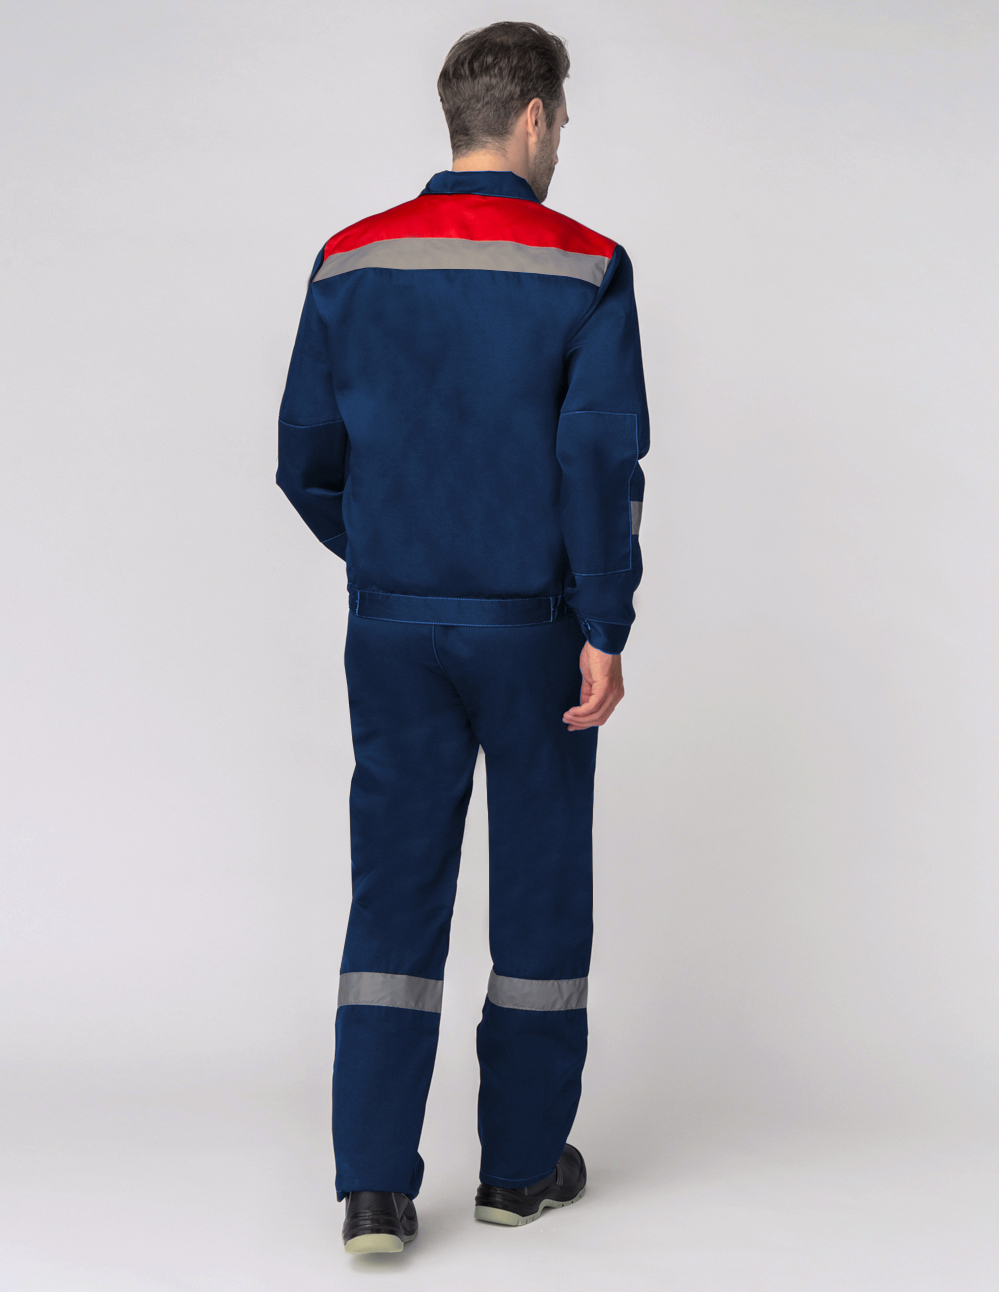 Костюм Легион-1 СОП (тк.Смесовая,210) брюки, т.синий/красный